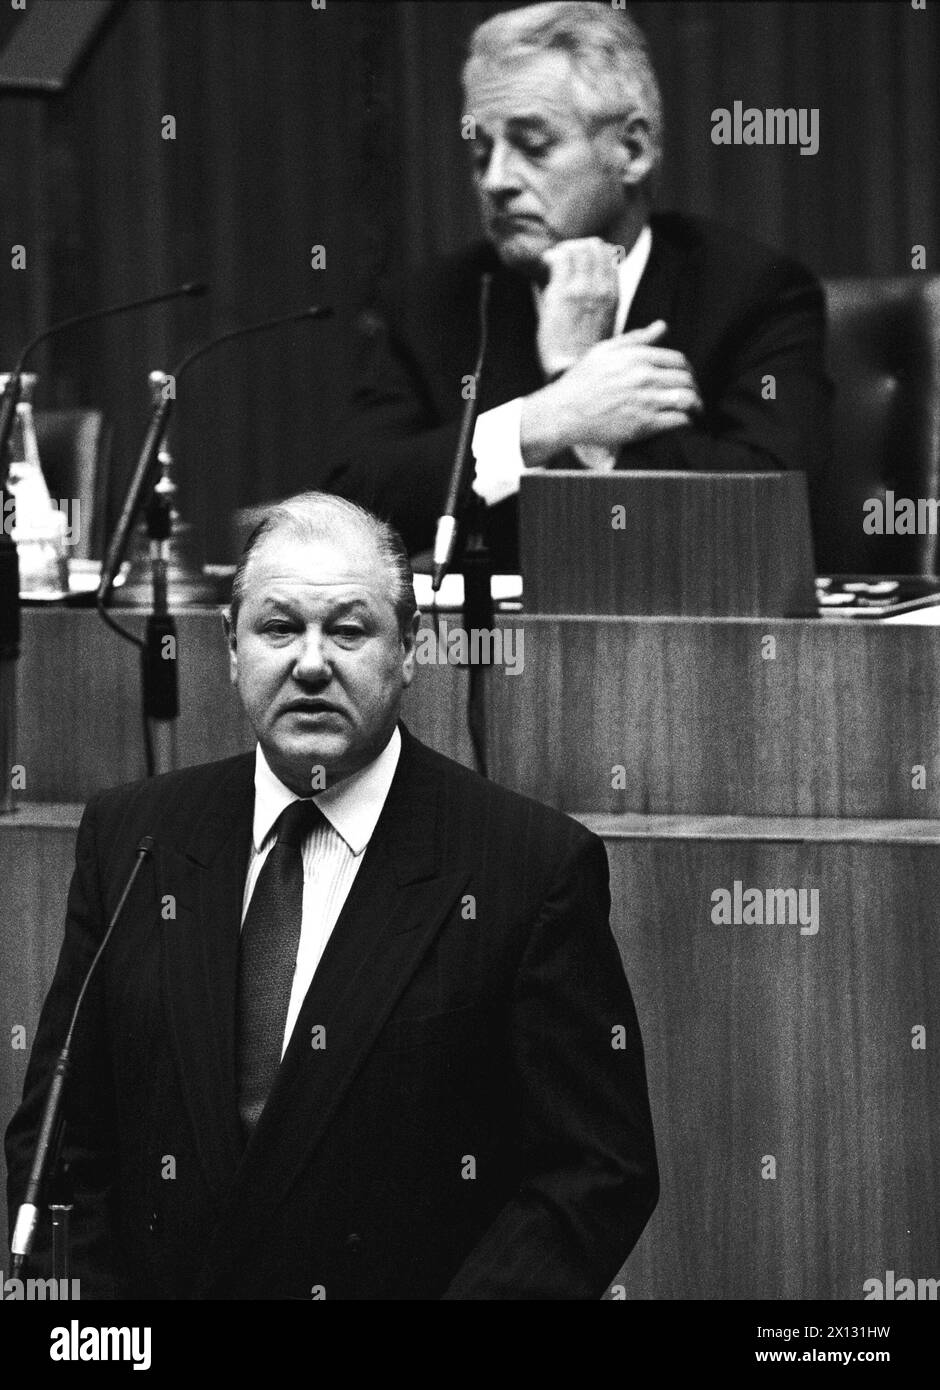 Das Bild wurde am 1. Oktober 1987 während einer parlamentssitzung aufgenommen und zeigt den österreichischen Innenminister Karl Blecha, im Hintergrund ist Leopold Gratz zu sehen. - 19871001 PD0011 - Rechteinfo: Rechte verwaltet (RM) Stockfoto